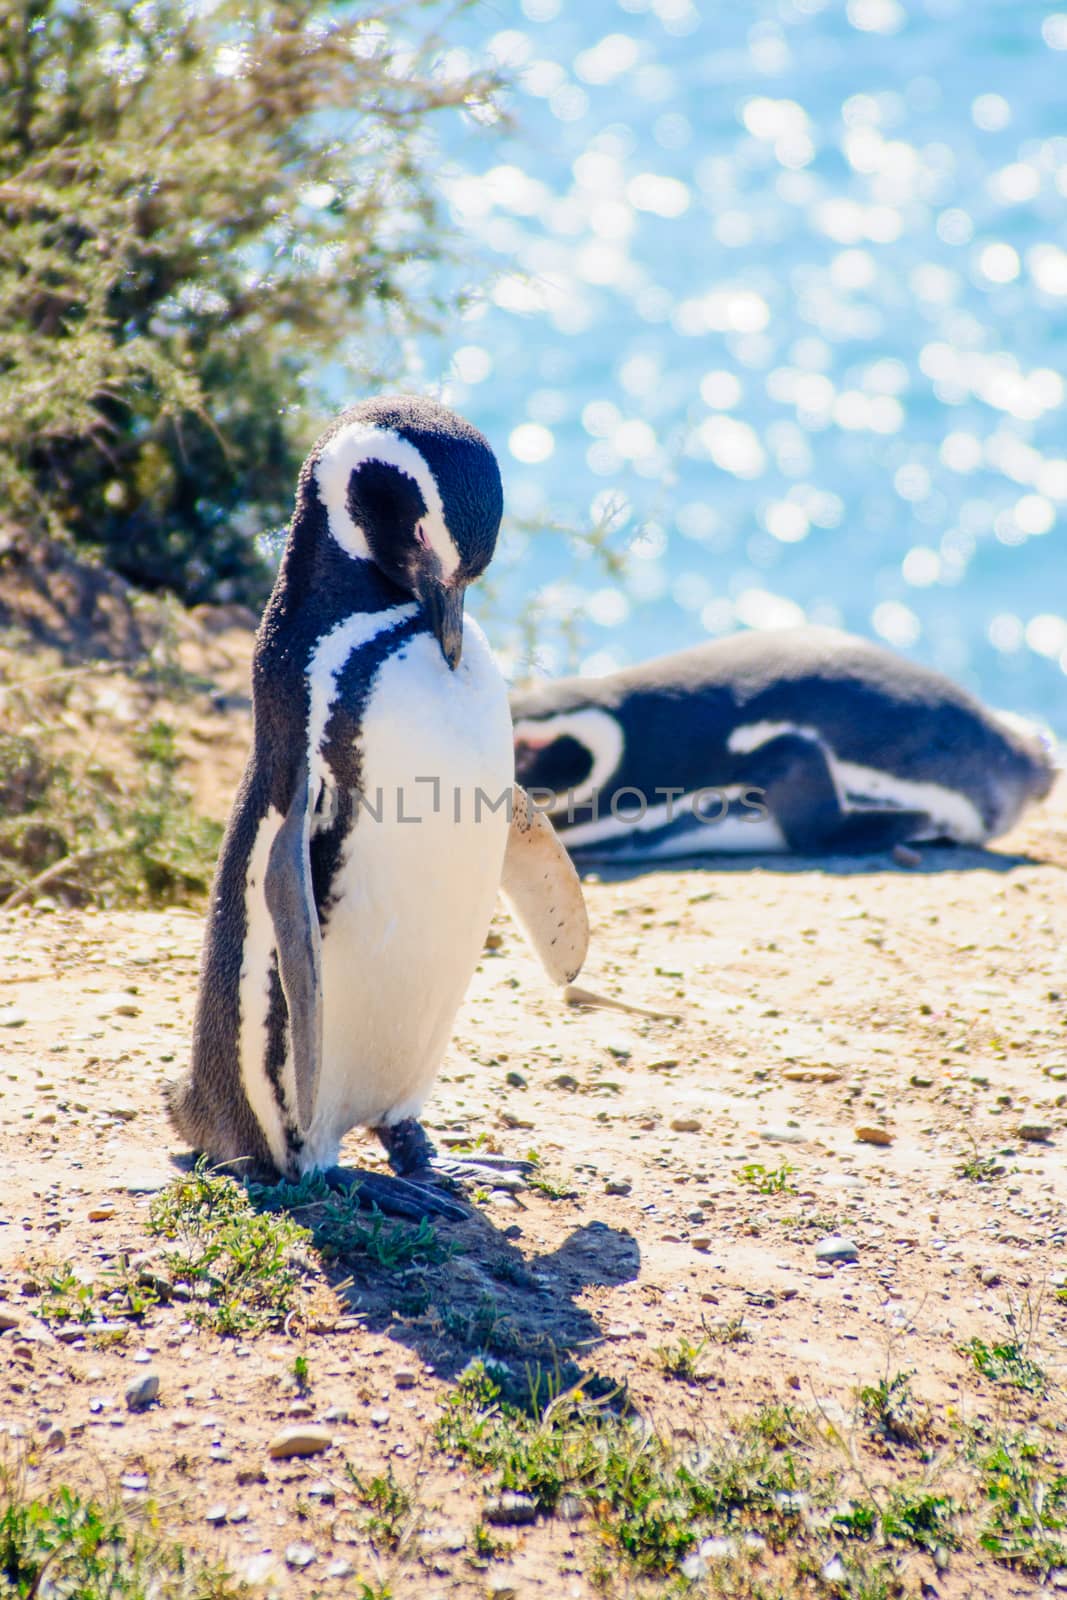 Magellanic Penguin in Valdes peninsula, Argentina